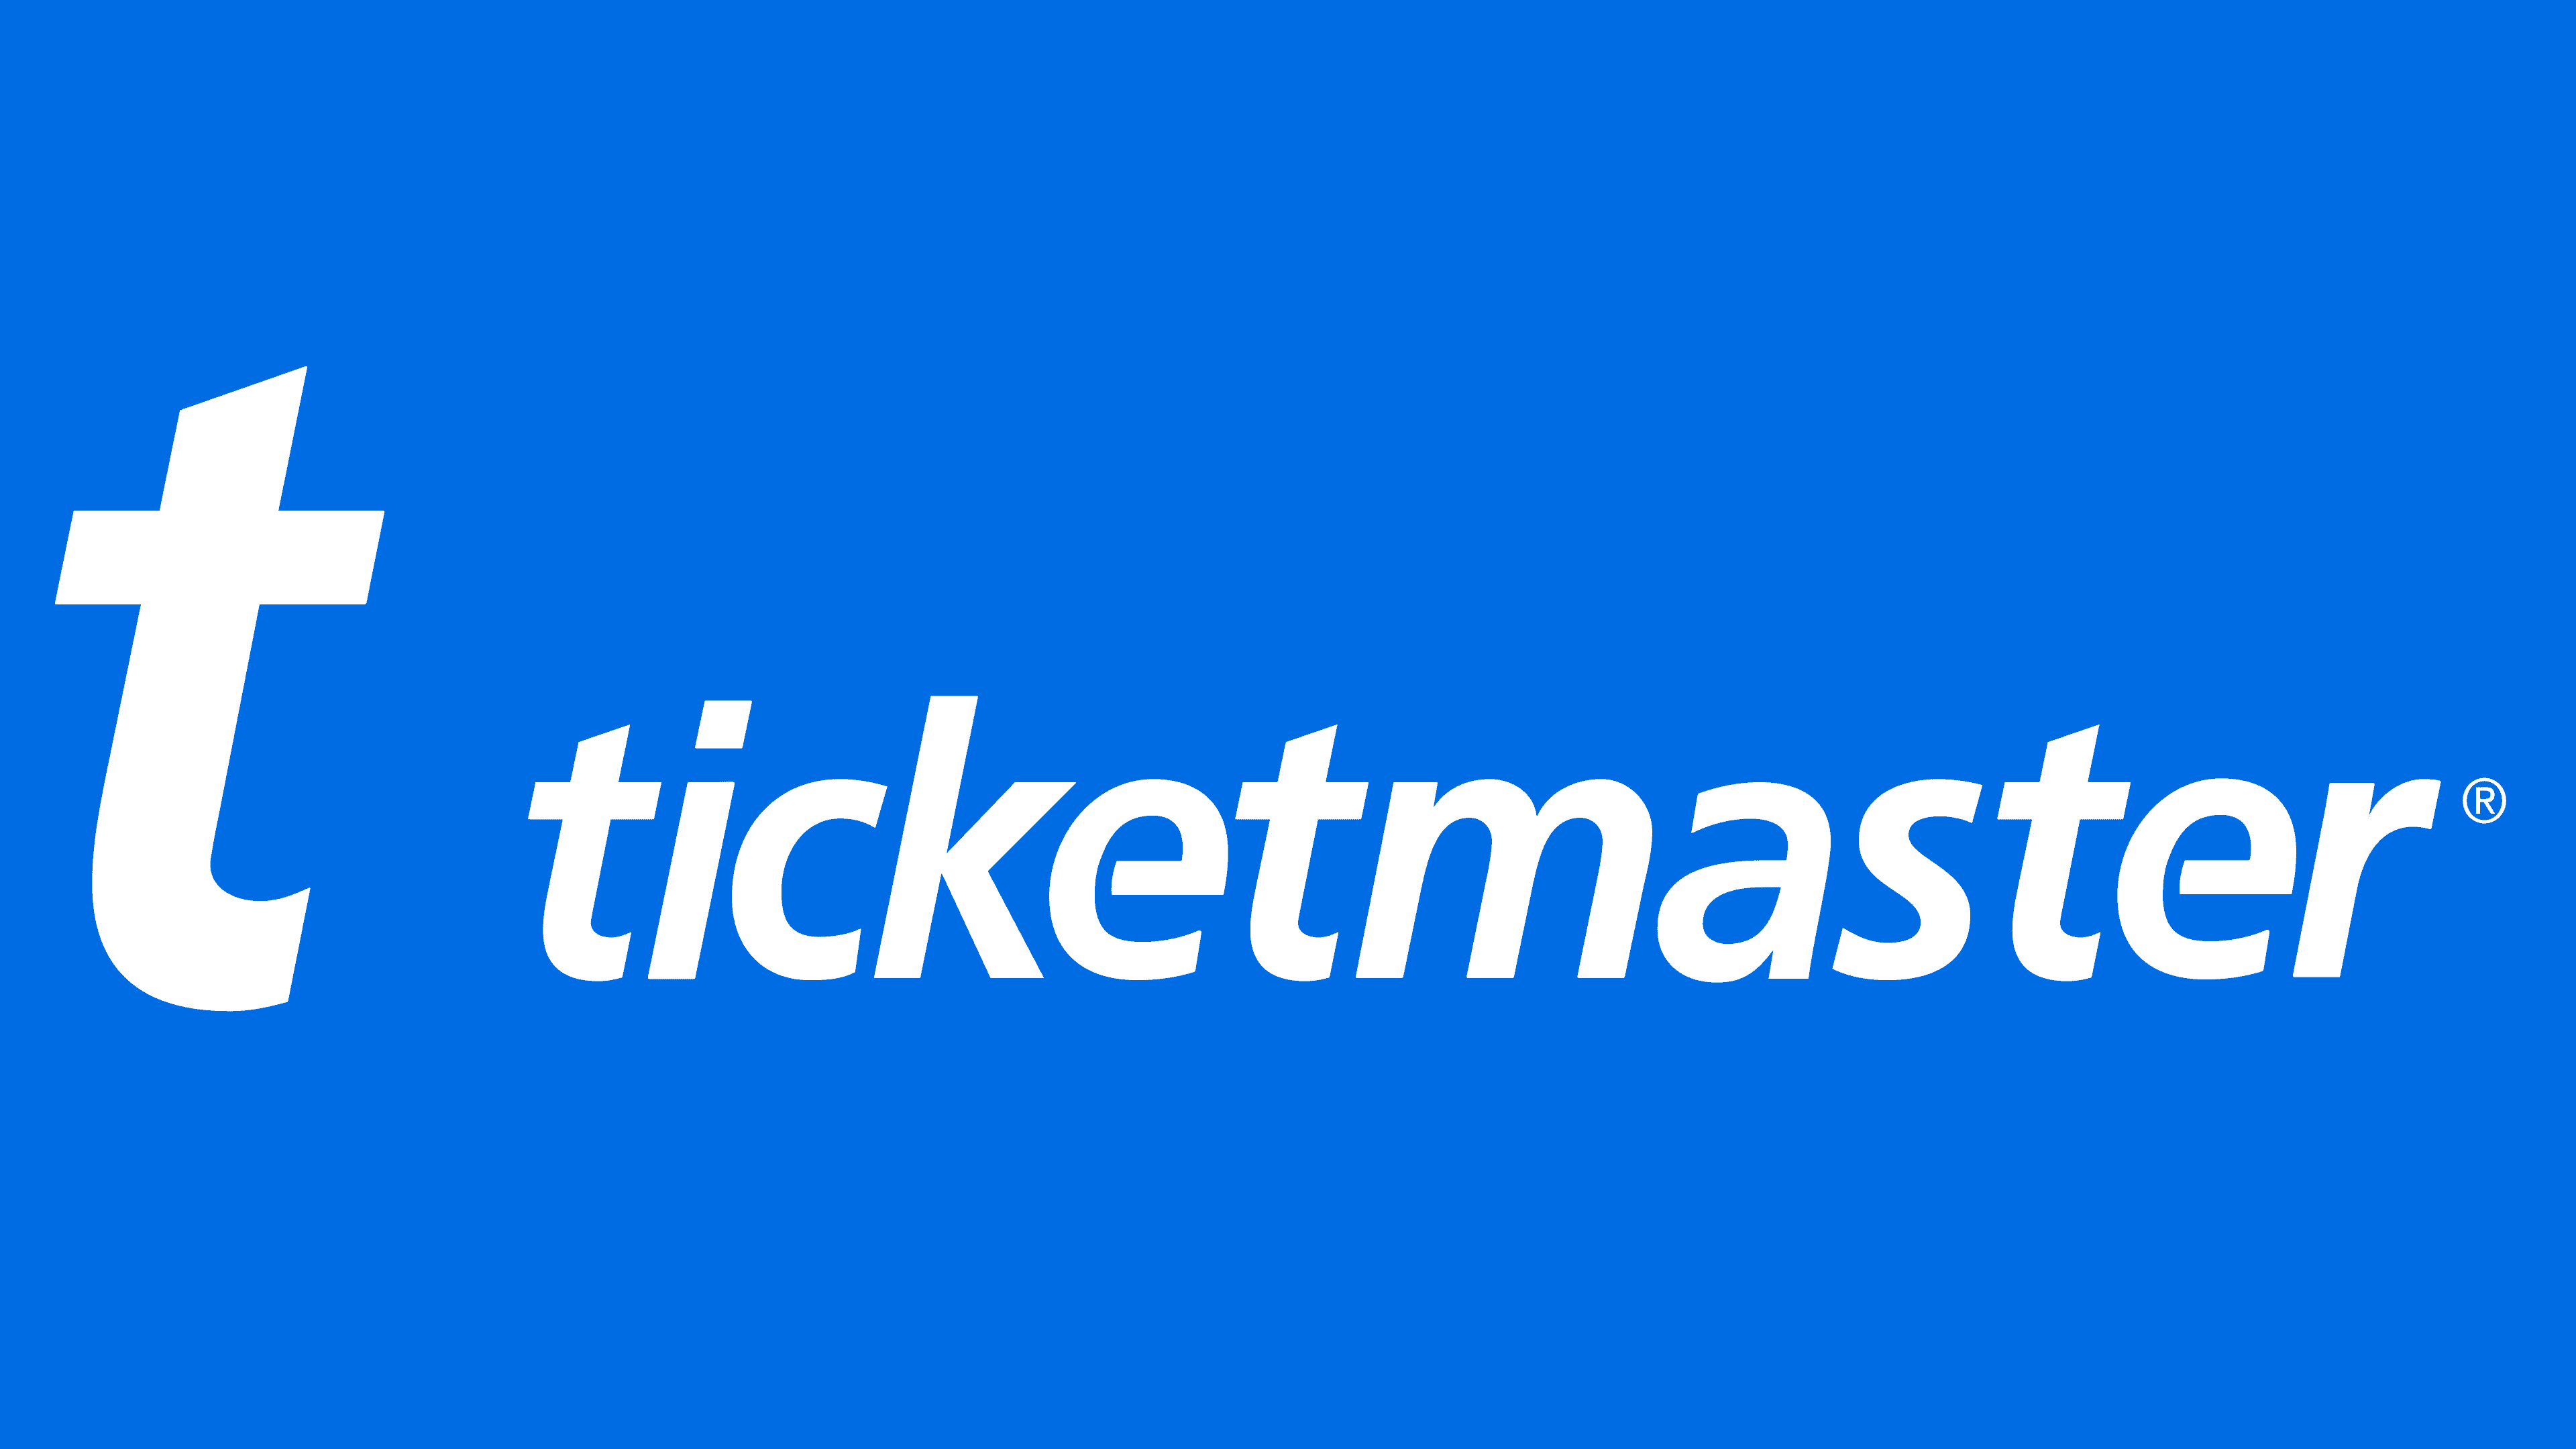 ticketmaster app logo